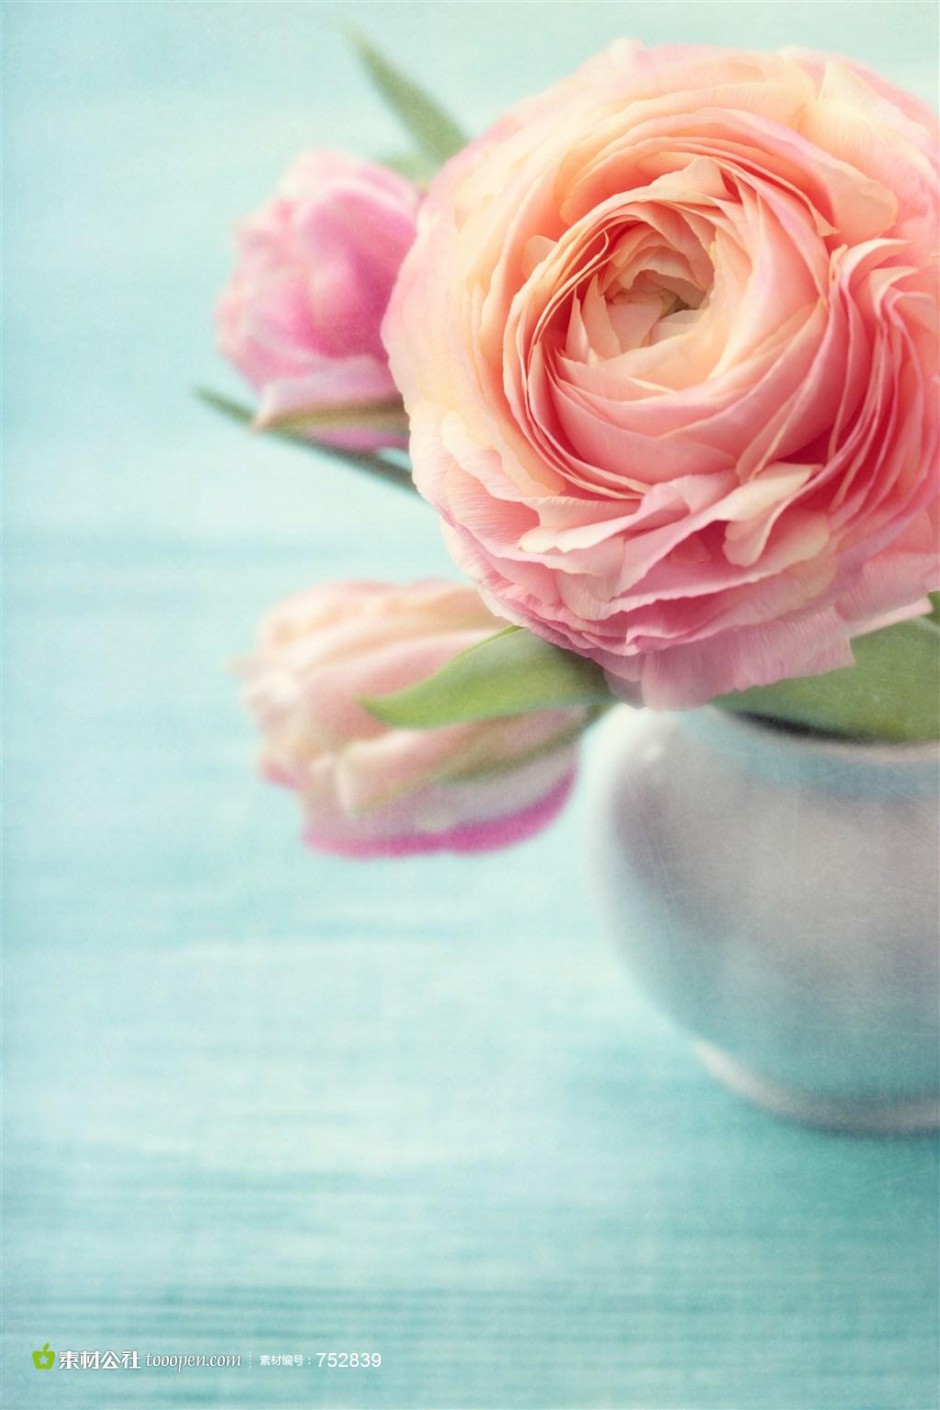 素雅清新风格瓶中玫瑰精美图片素材